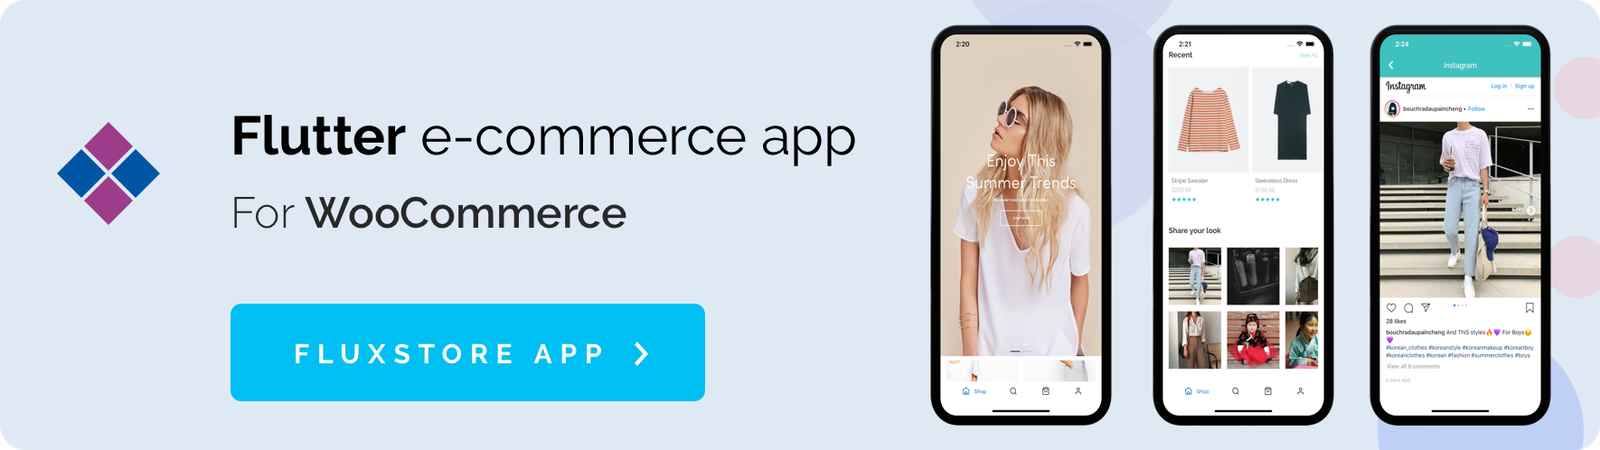 Fluxstore Multi Vendor - Flutter E-commerce Full App - 28